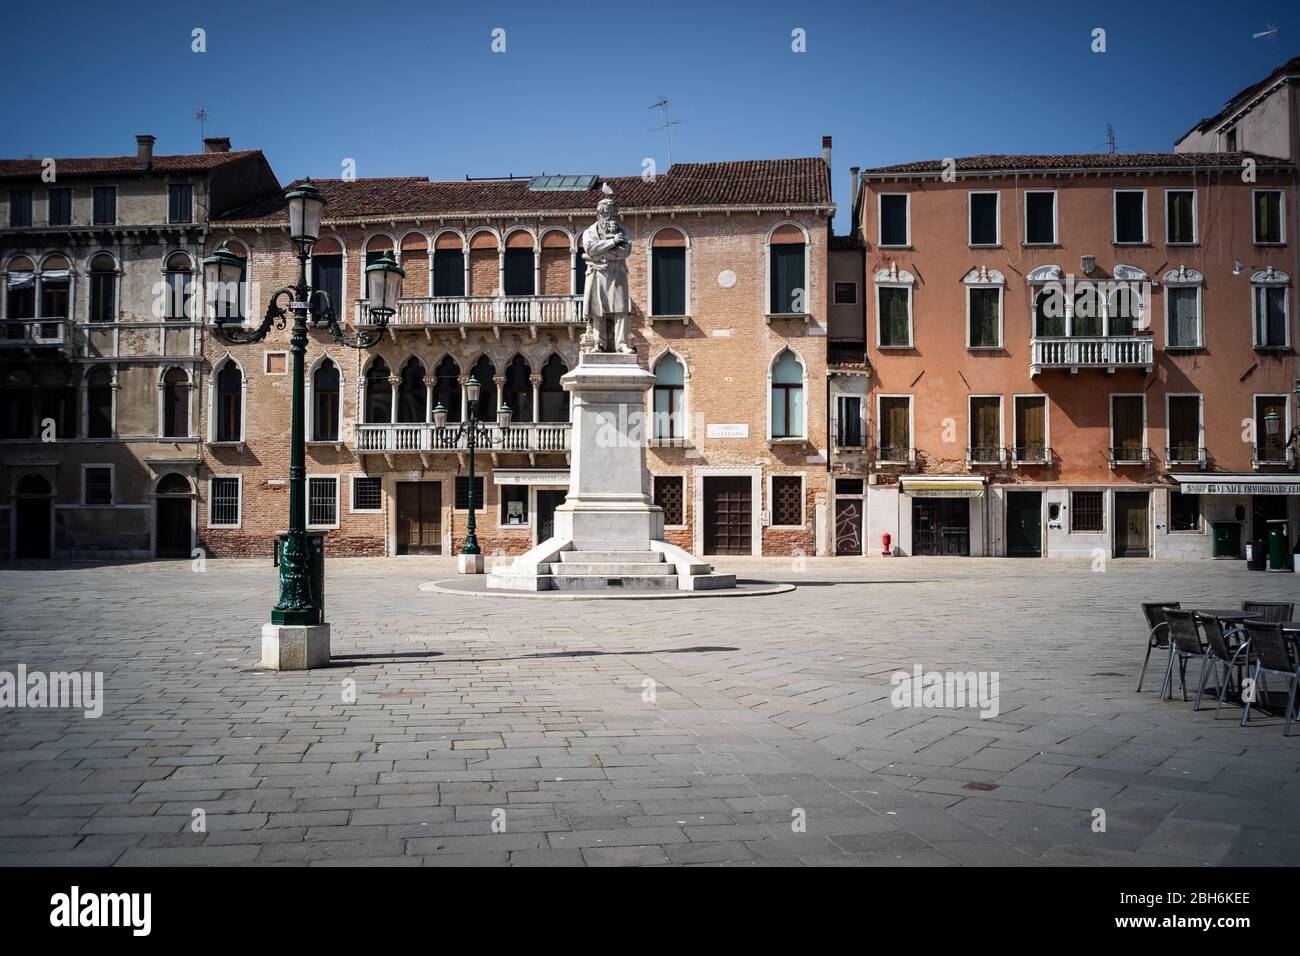 VENEZIA, ITALIA - APRILE 2020: Una piazza vuota durante il blocco nazionale per la pandemia Covid-19. Foto Stock